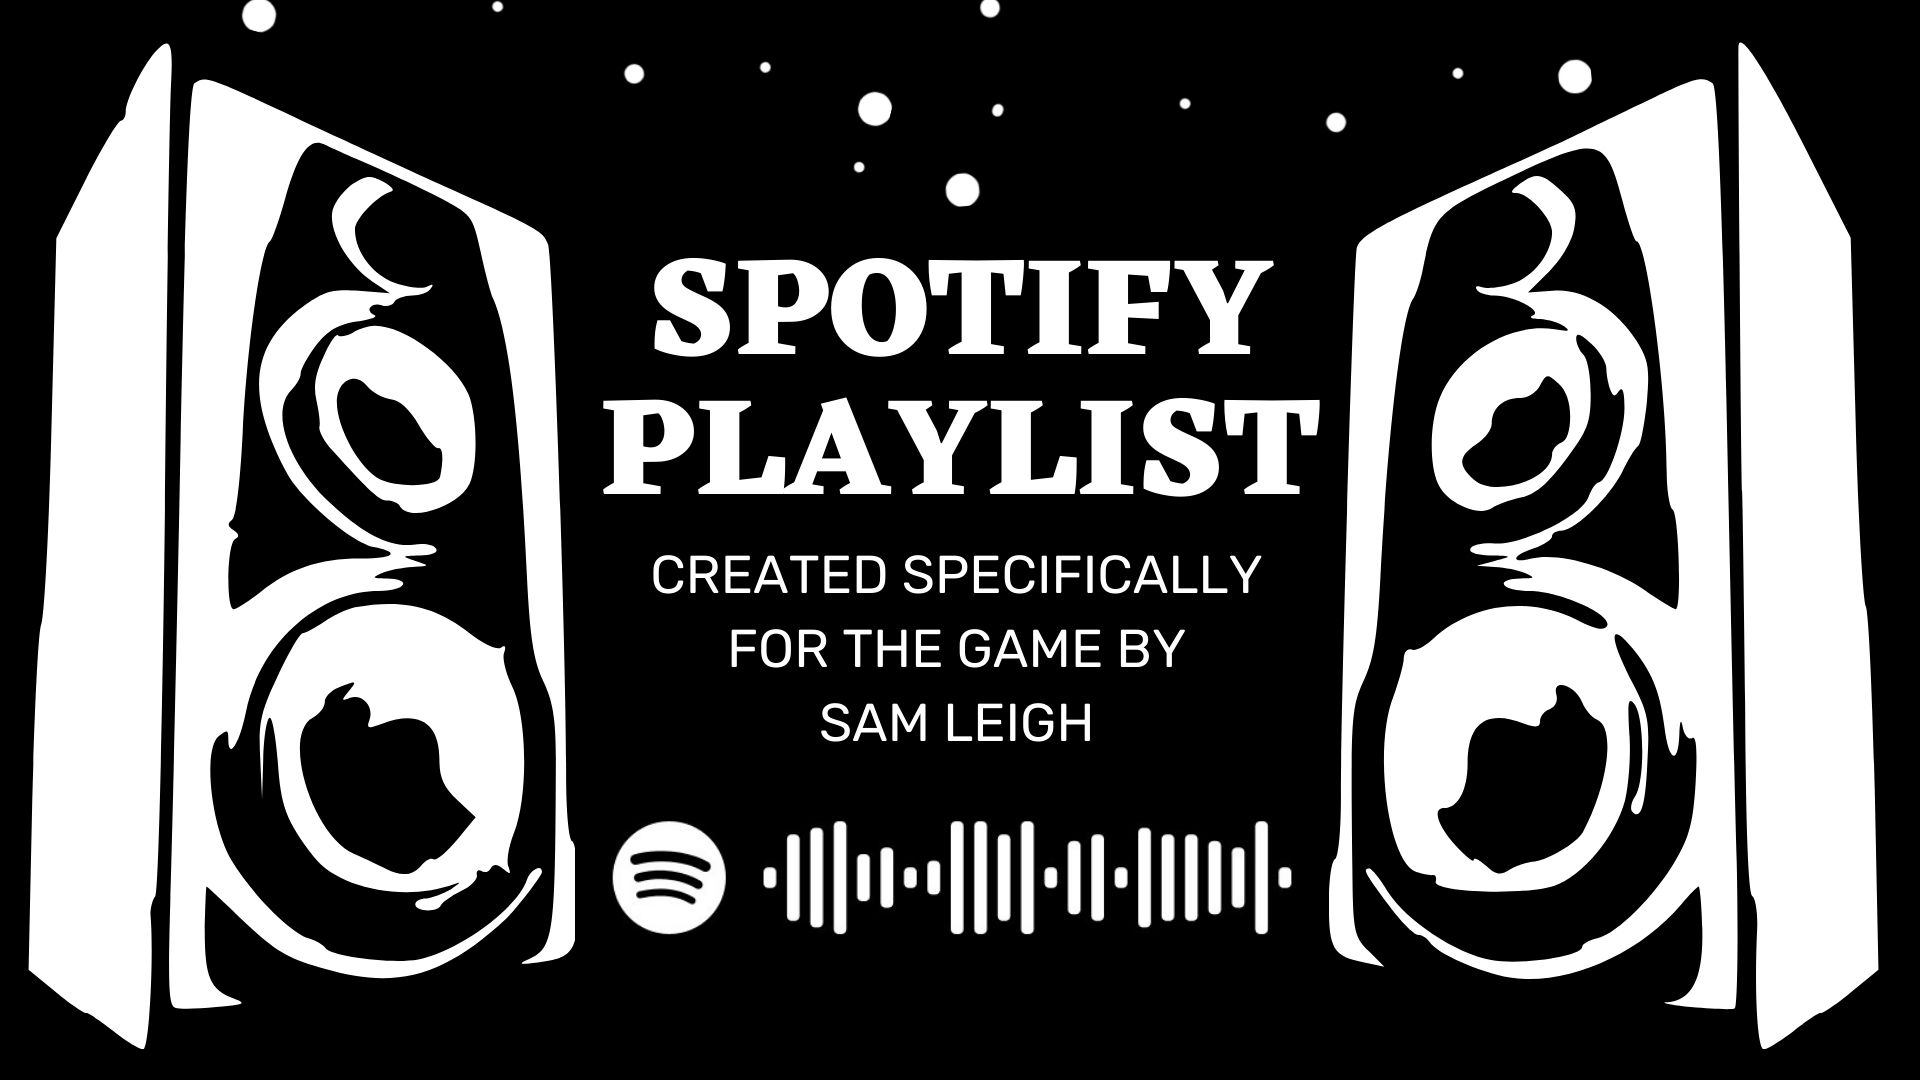 Spotify Playlist!